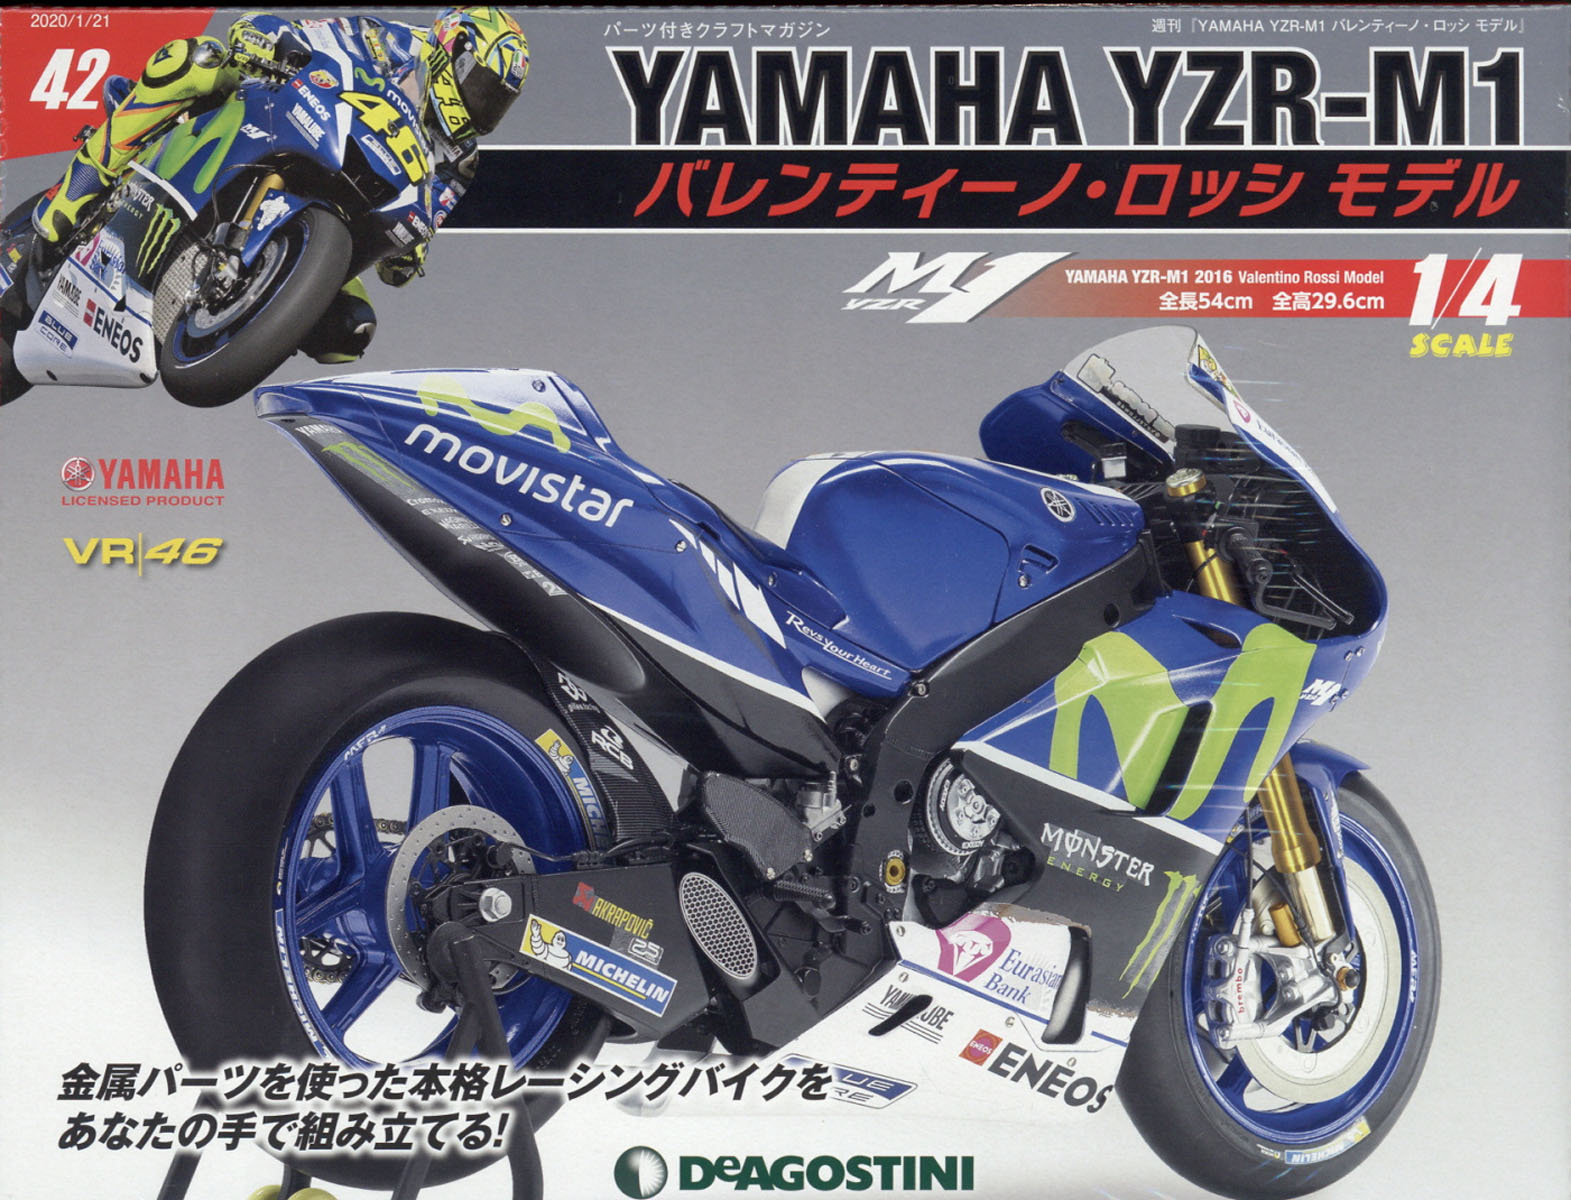 週刊 YAMAHA YZR-1 バレンティーノ・ロッシ モデル 2020年 1/21号 [雑誌]